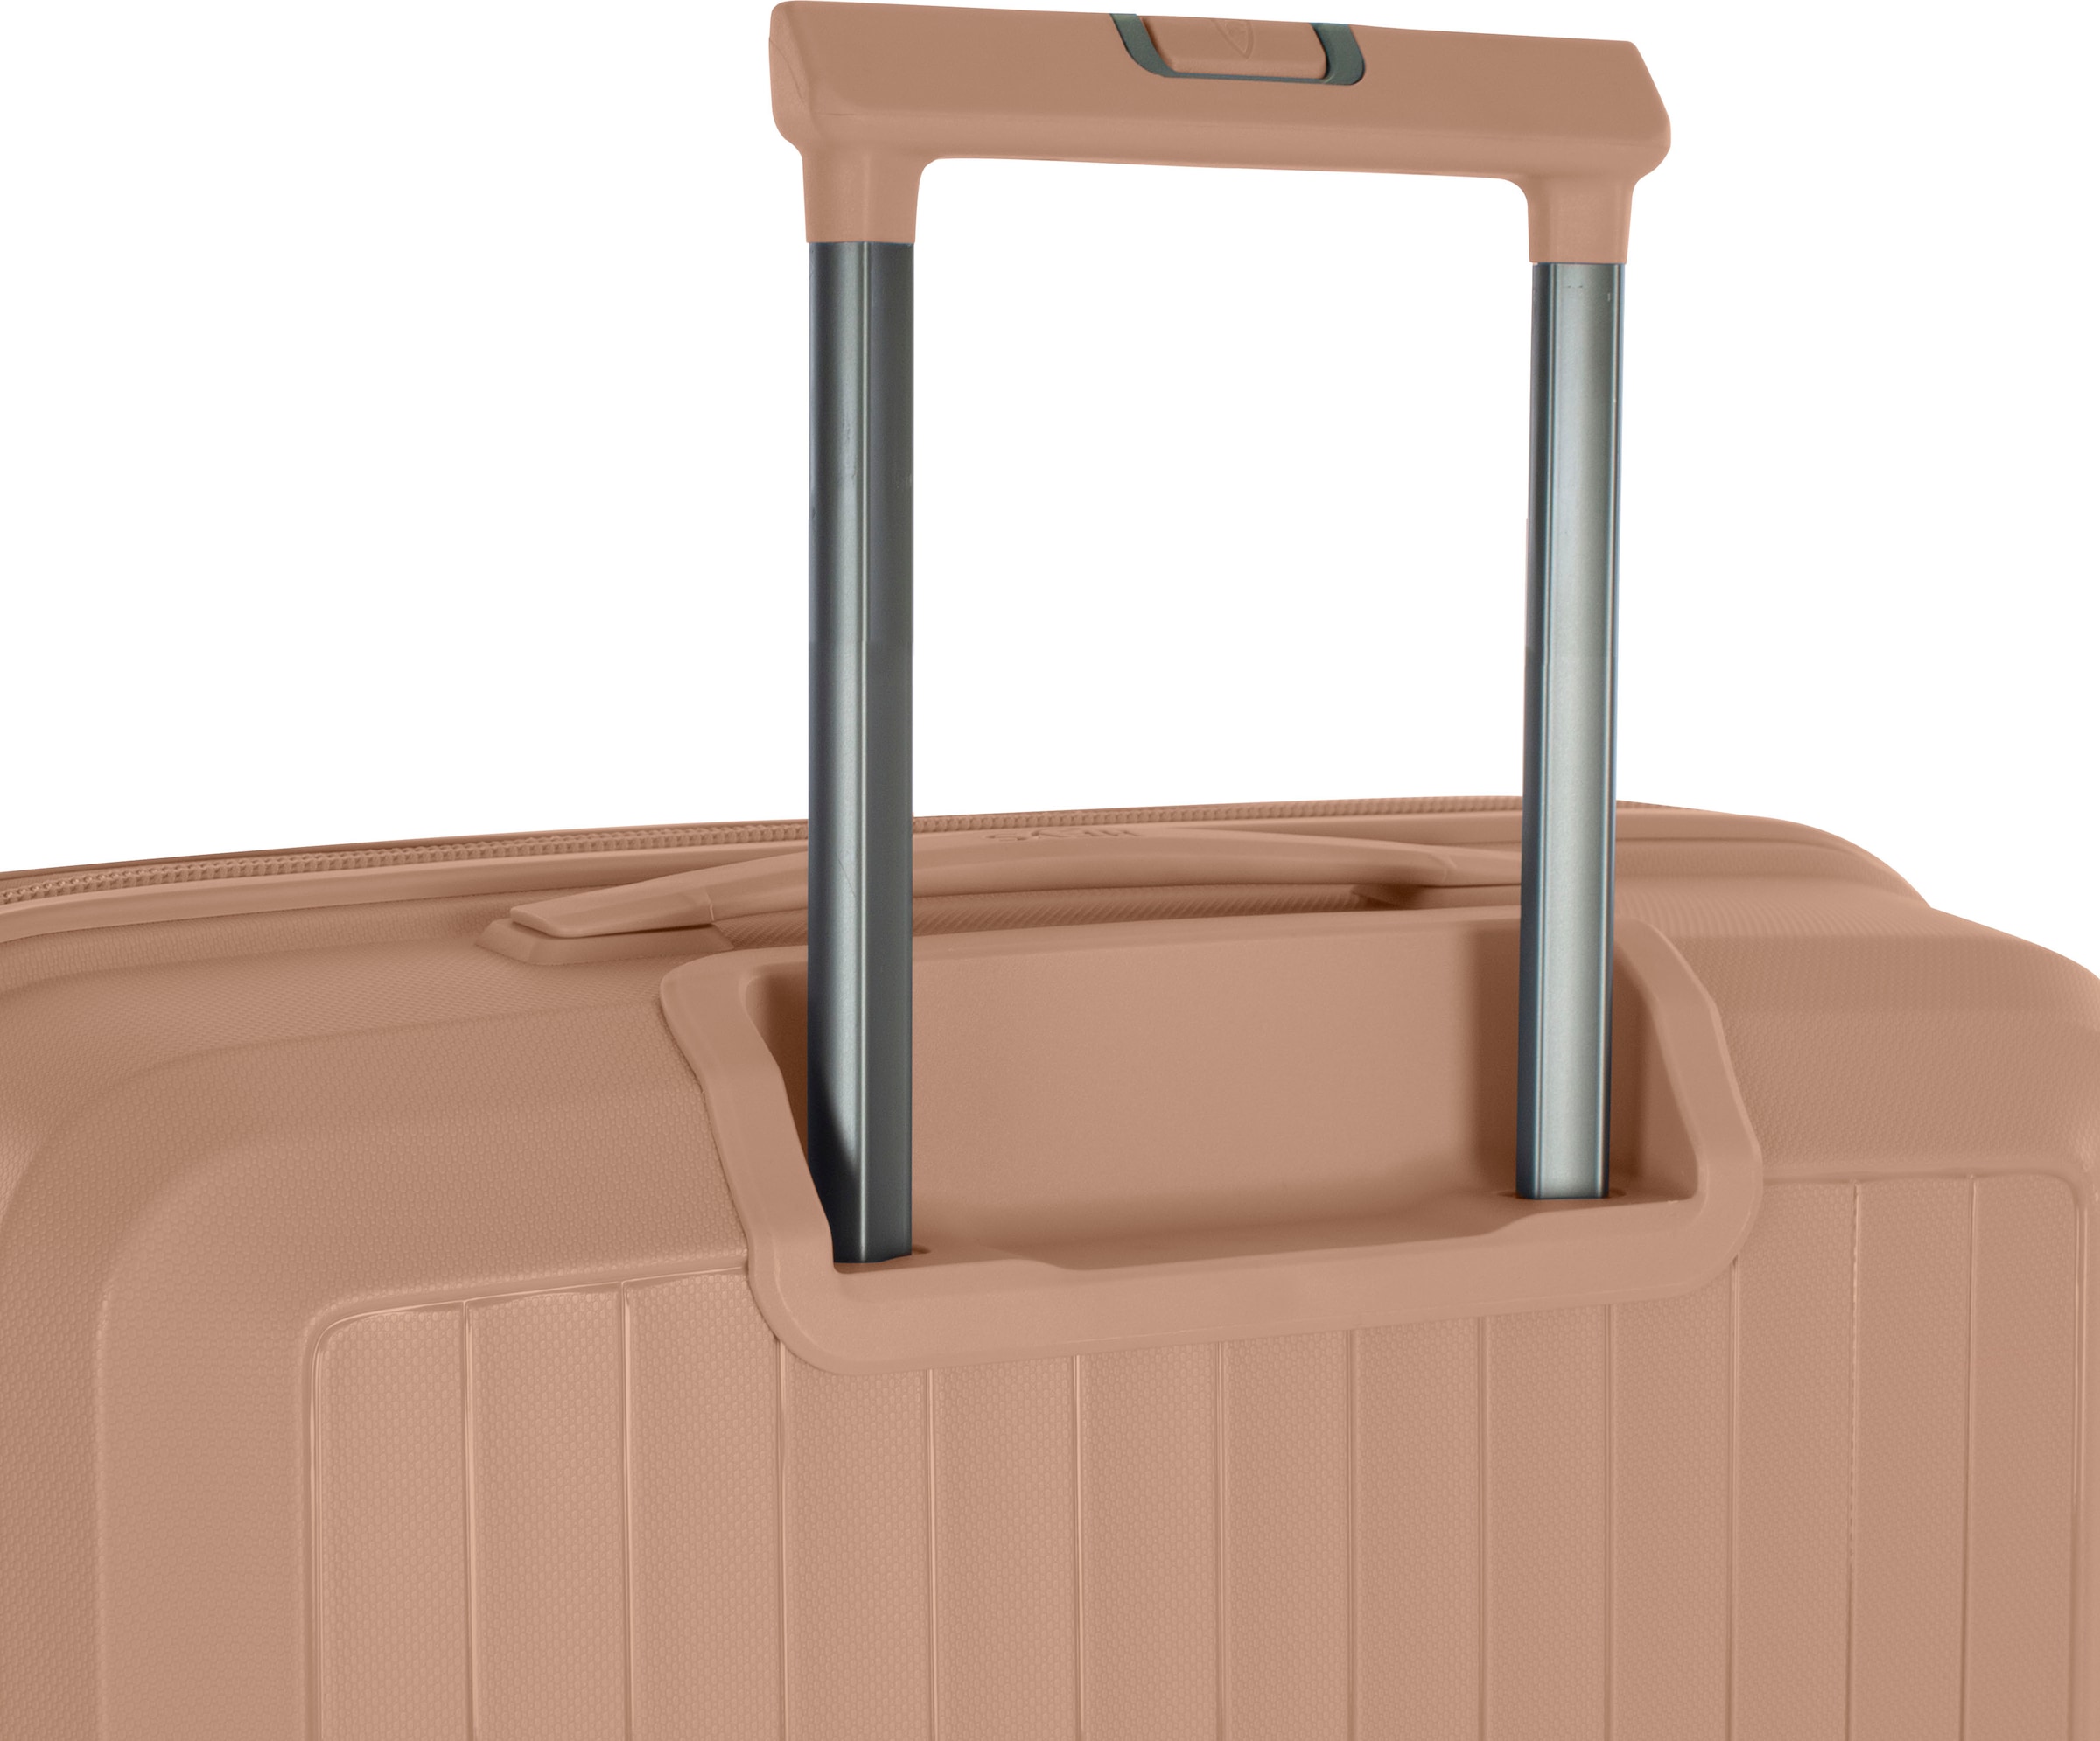 Heys Hartschalen-Trolley »AirLite, 53 cm«, 4 Rollen, Hartschalen-Koffer Handgepäck-Koffer TSA Schloss Volumenerweiterung